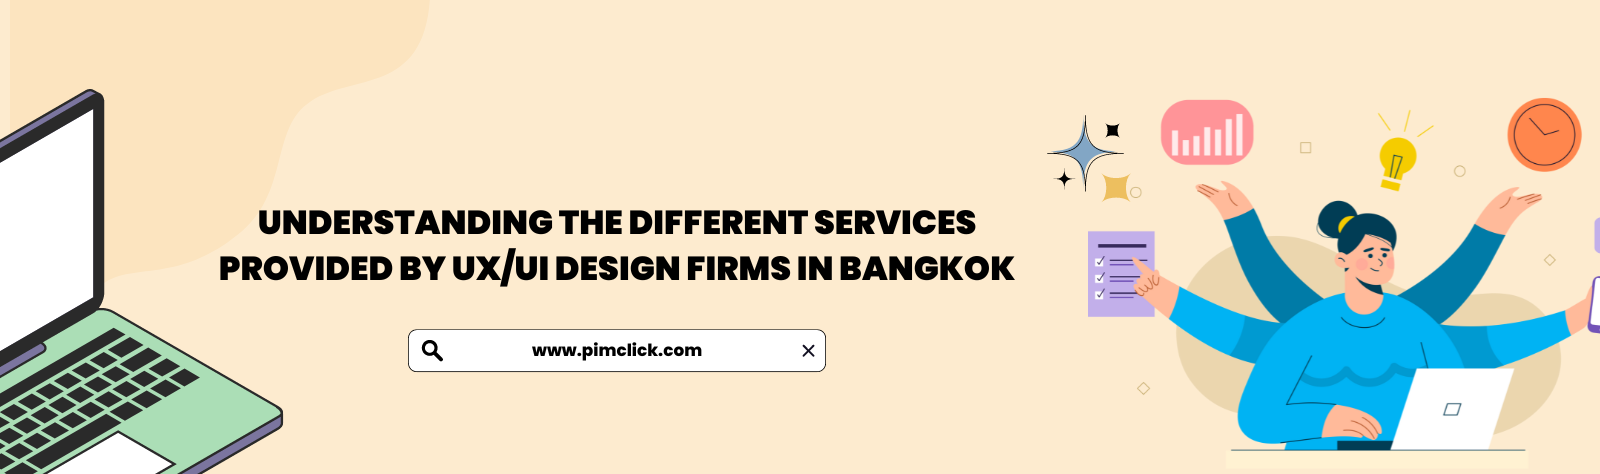 pimclick-ux-ui-design-firms-bangkok